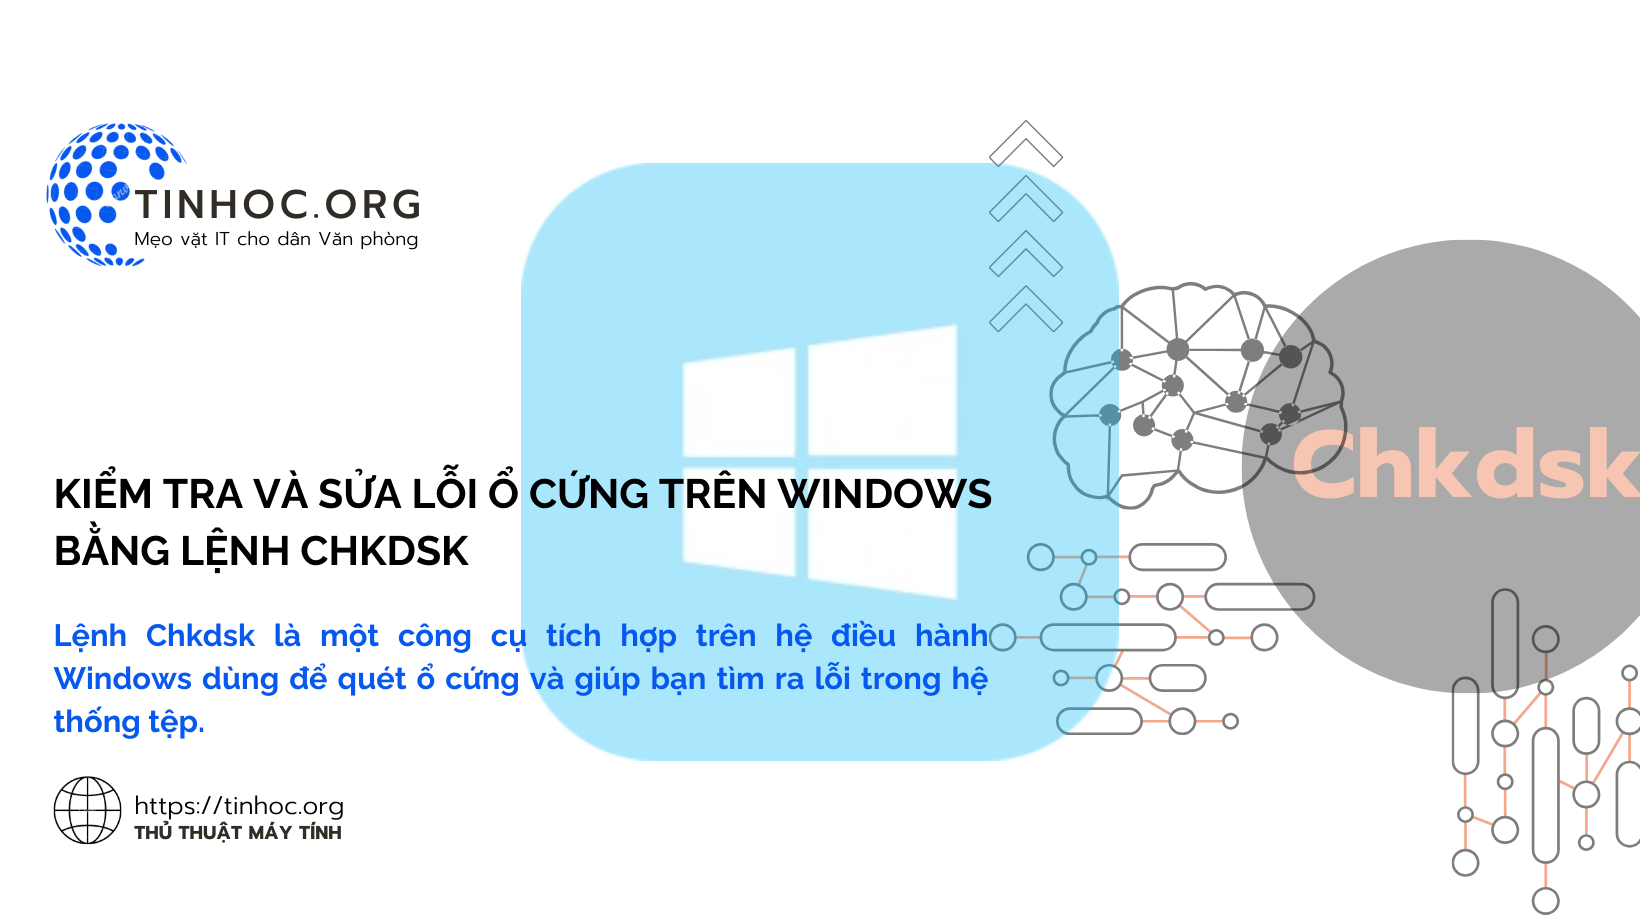 Lệnh Chkdsk là một công cụ tích hợp trên hệ điều hành Windows dùng để quét ổ cứng và giúp bạn tìm ra lỗi trong hệ thống tệp.